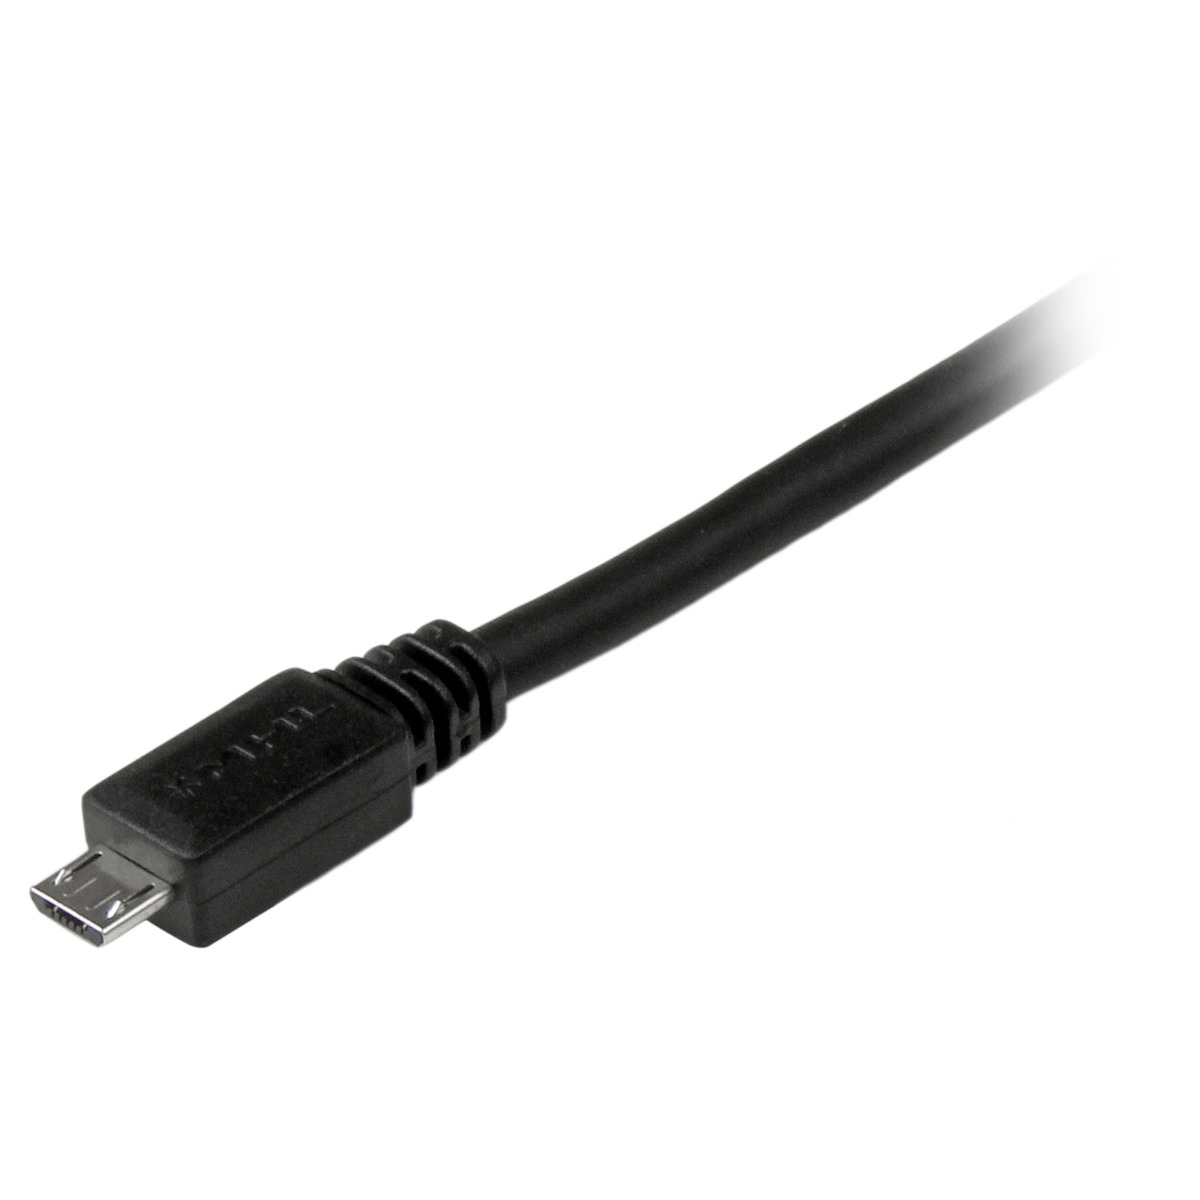 Cable 3m Mhl Micro Usb A Hdmi Convertidor